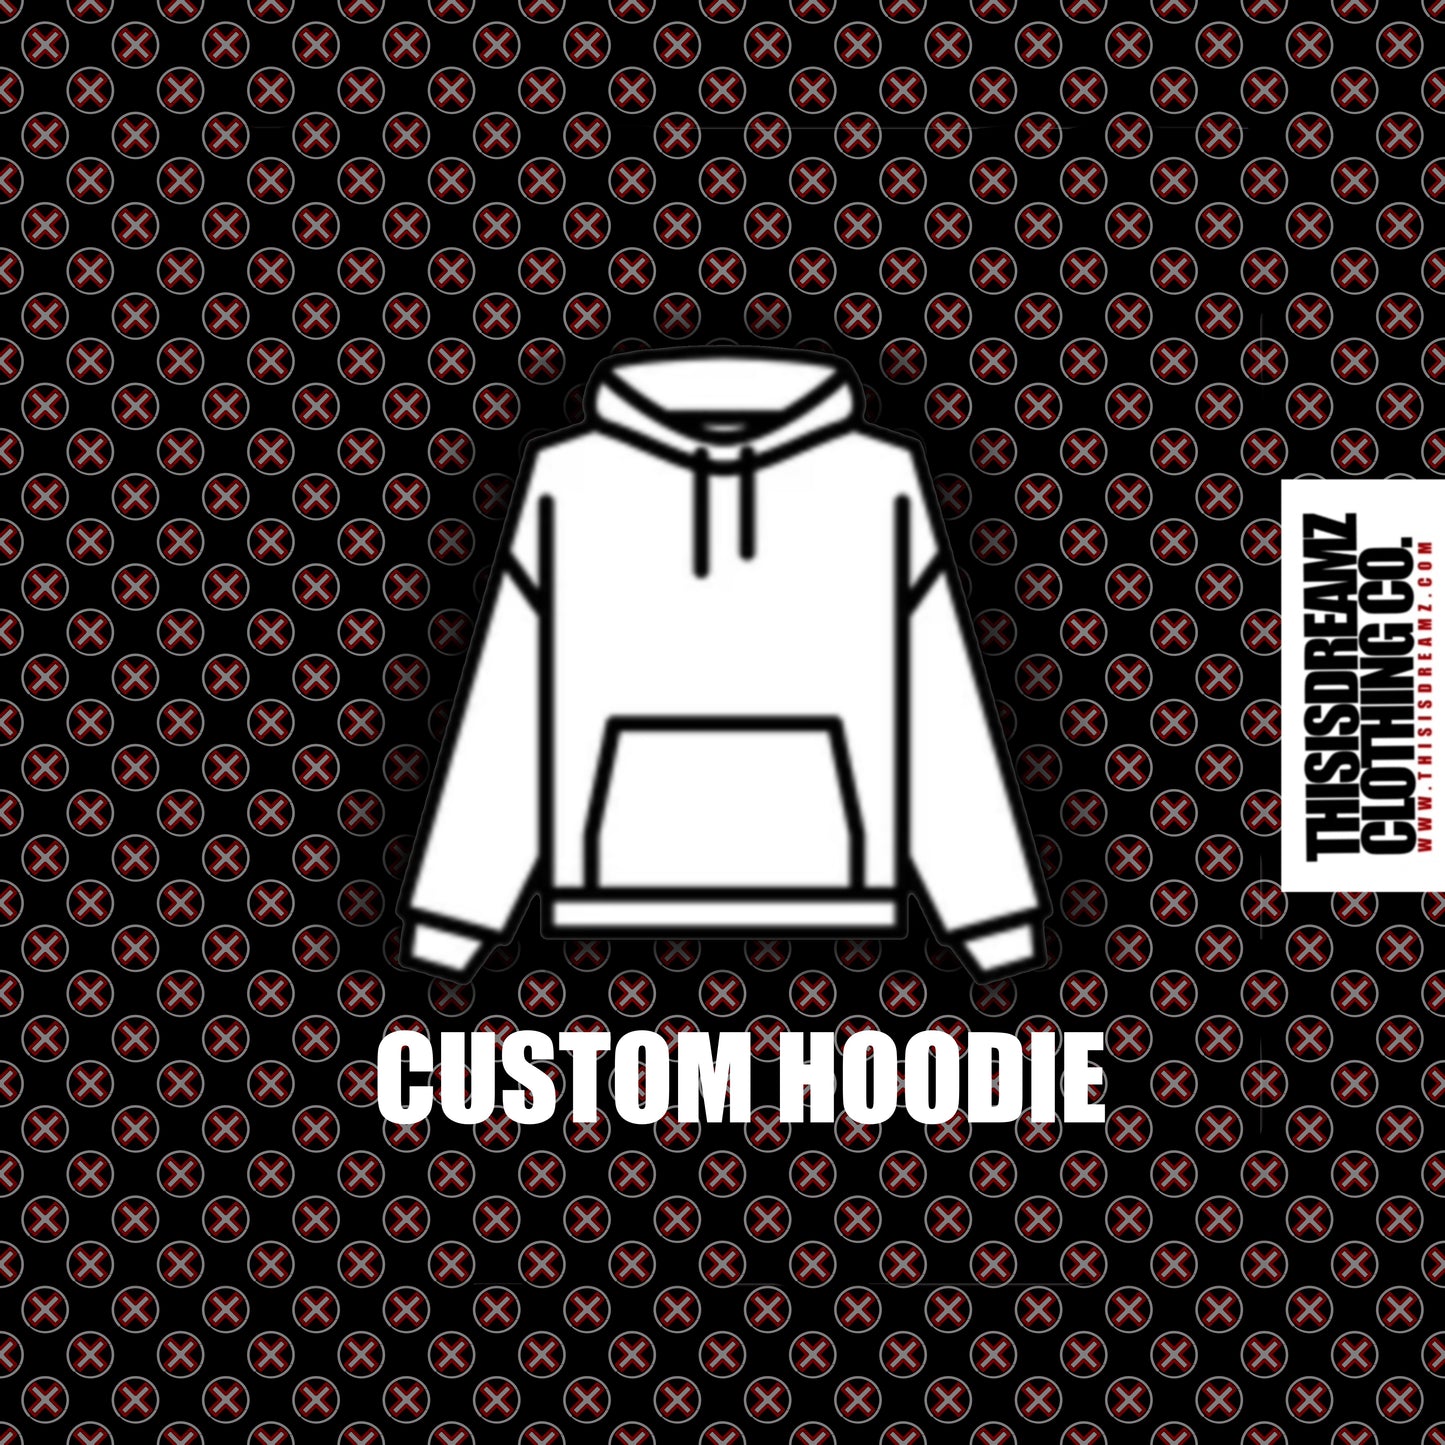 Custom Hoodie - Sample Hoodie